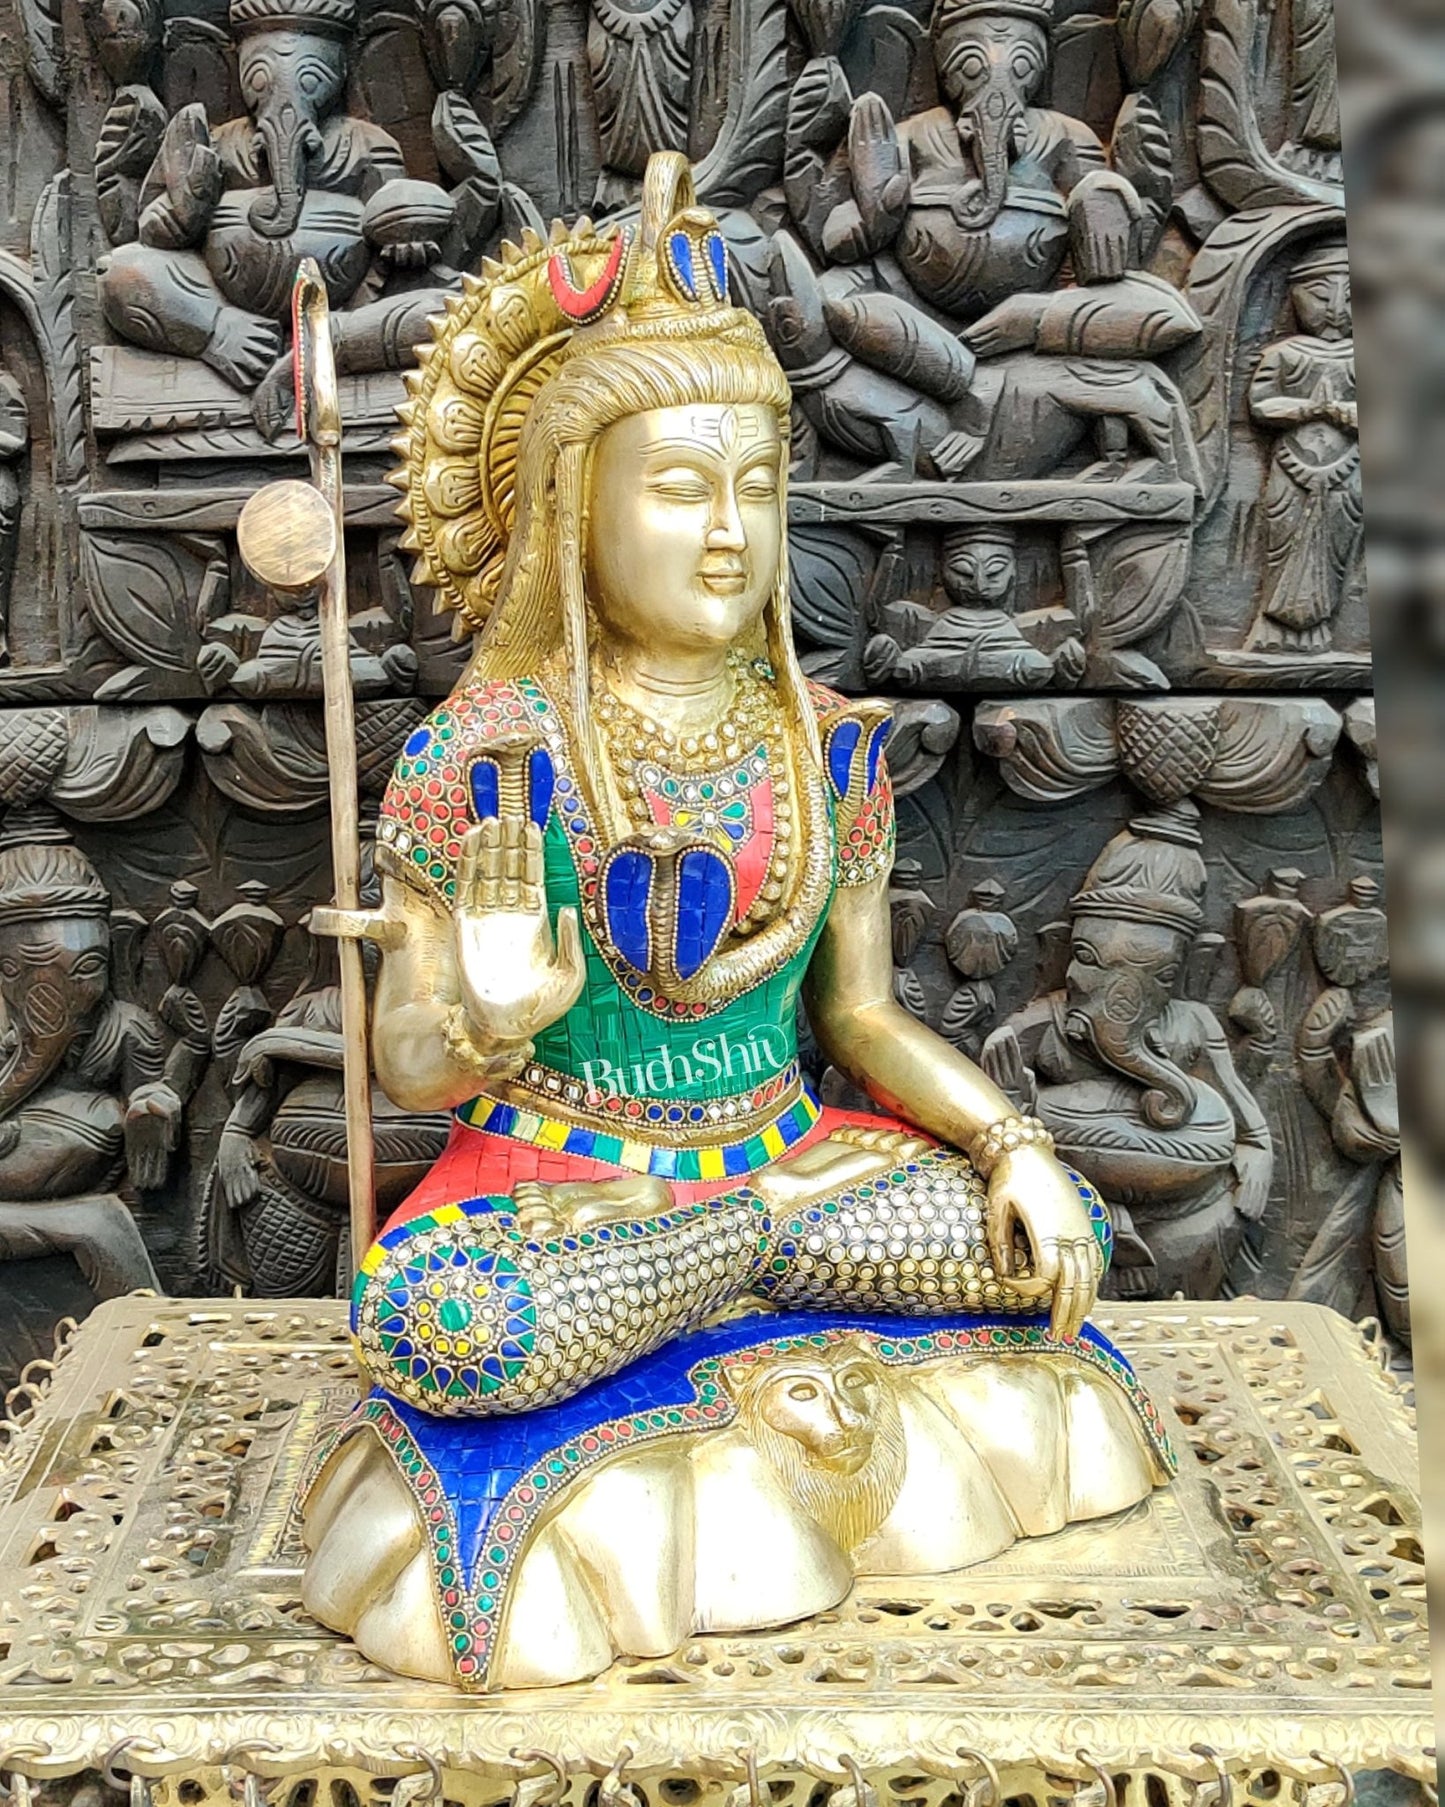 Brass Shiva Statue 17" - Budhshiv.com